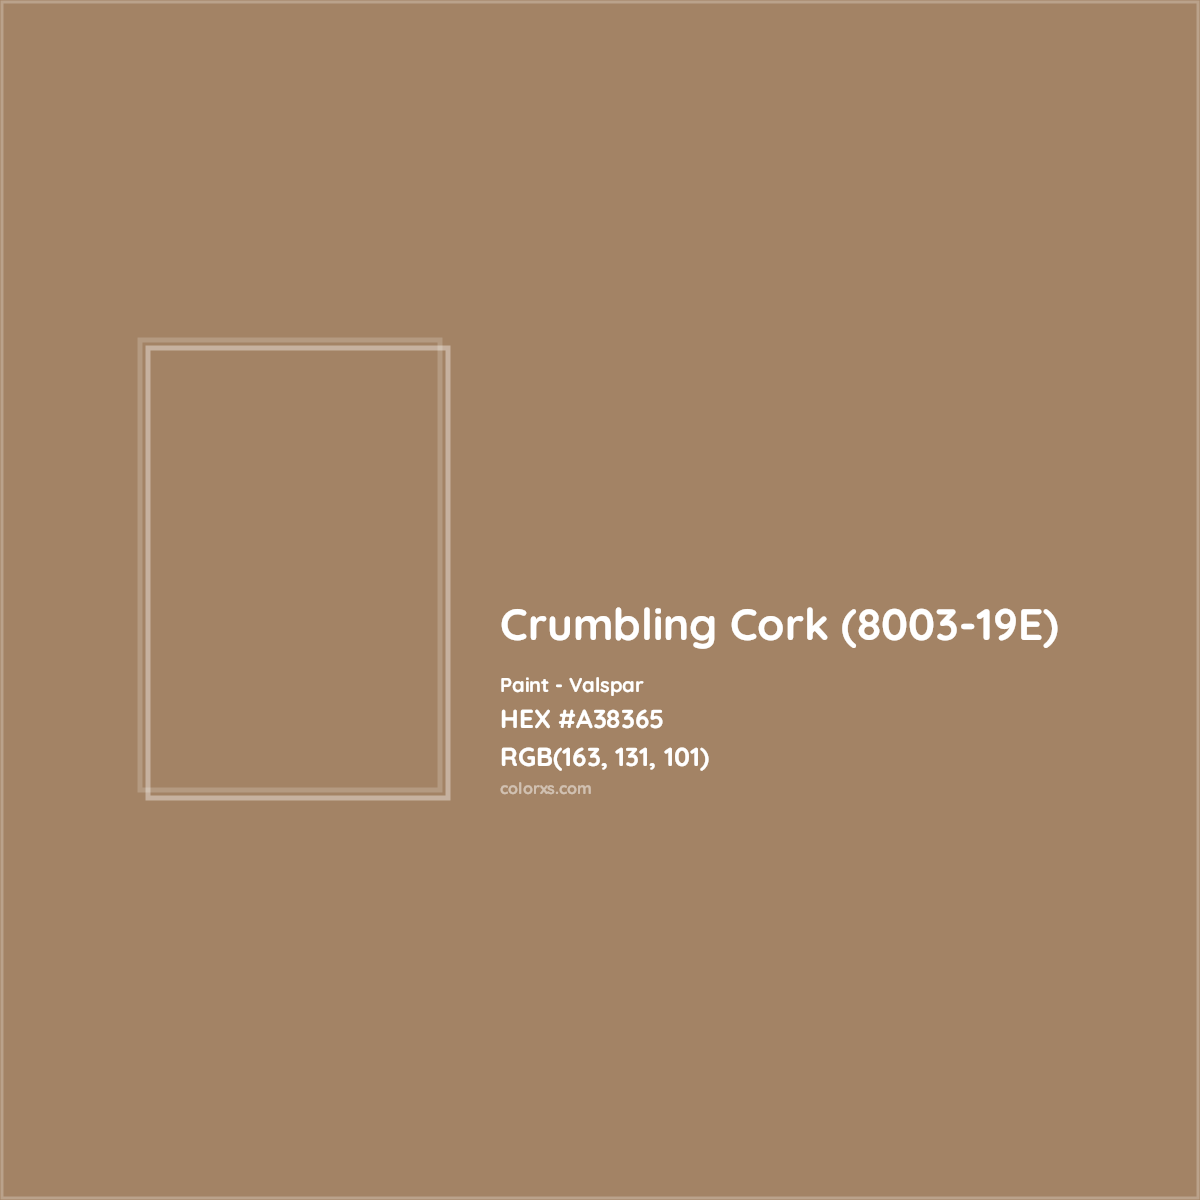 HEX #A38365 Crumbling Cork (8003-19E) Paint Valspar - Color Code